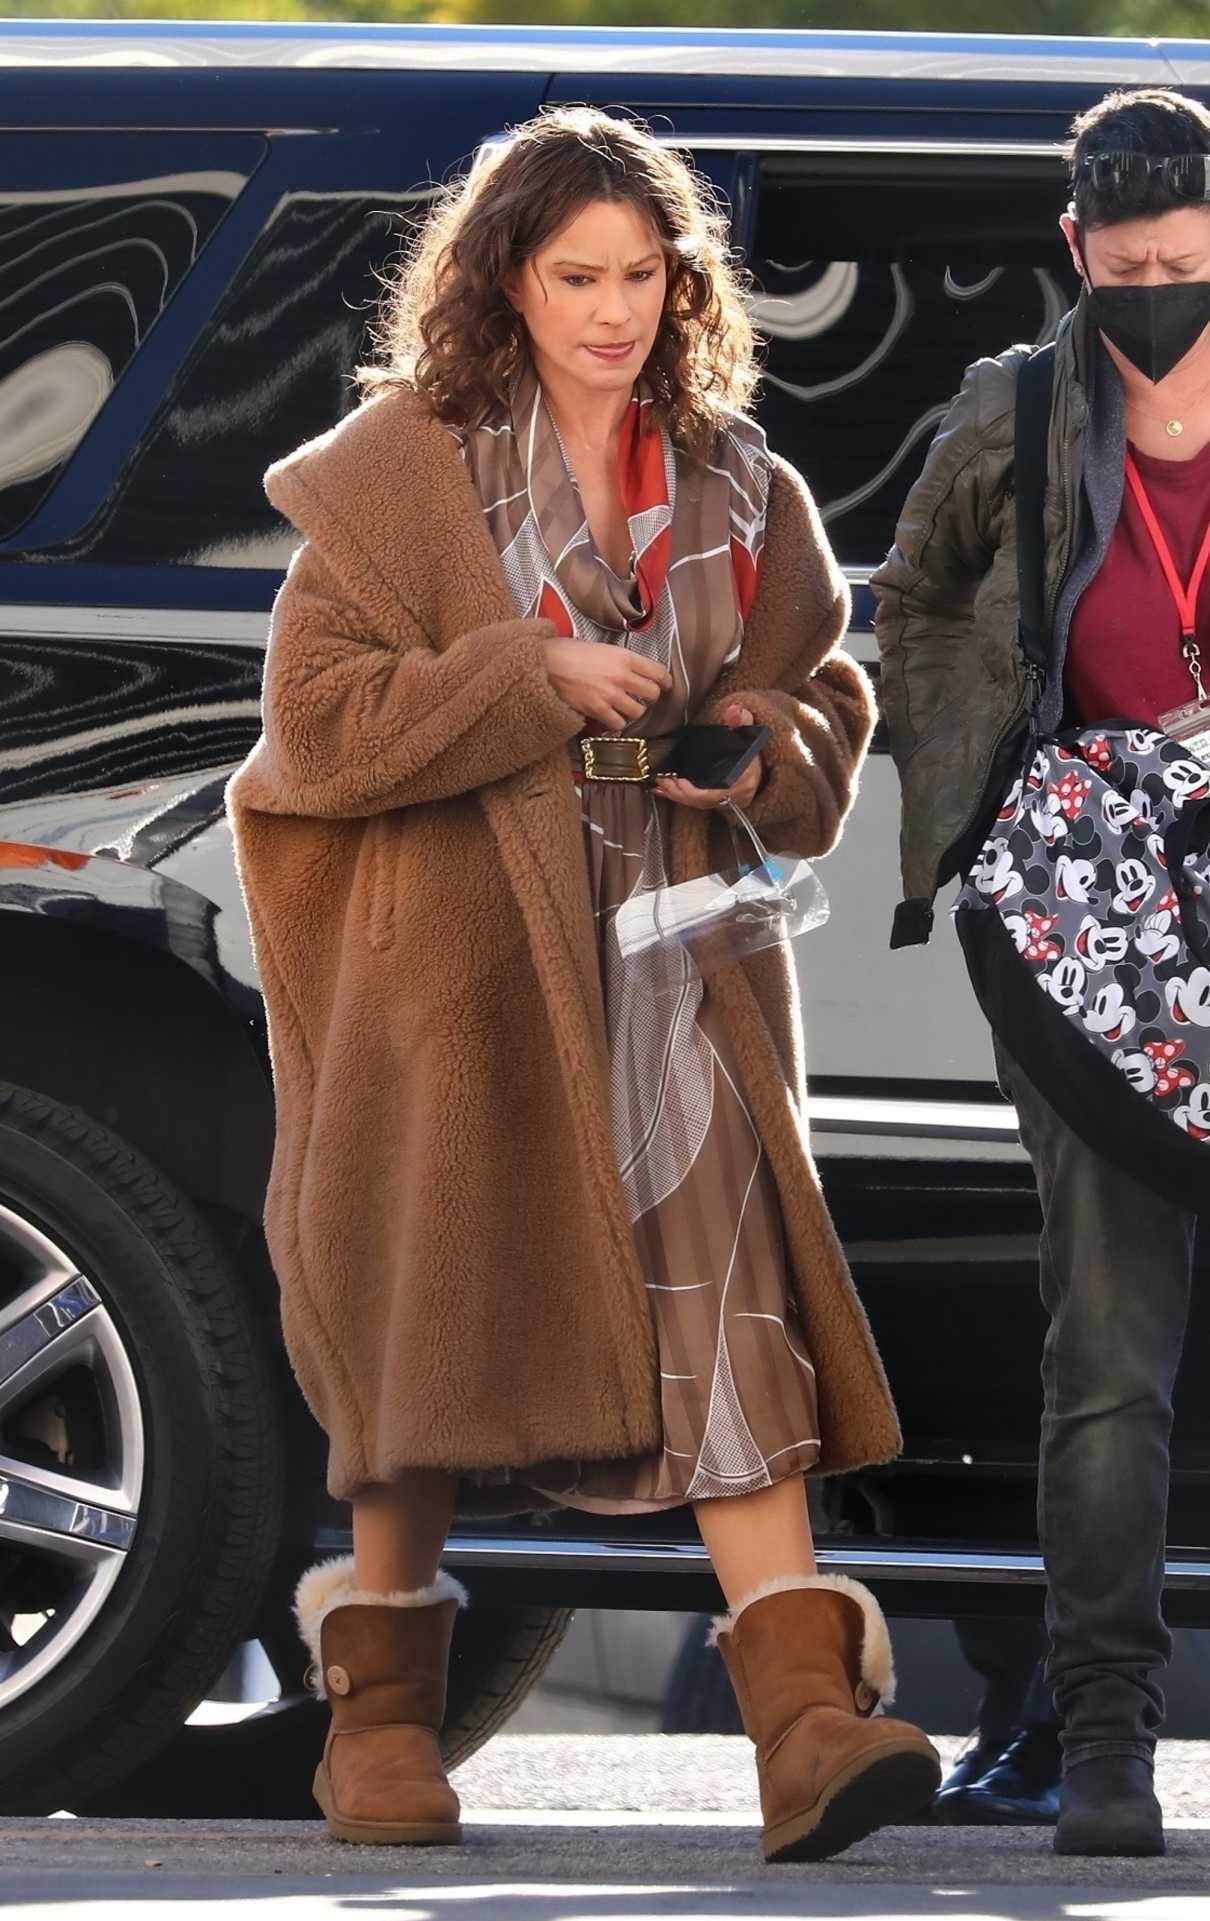 Sofia Vergara in a Tan Faux Fur Coat